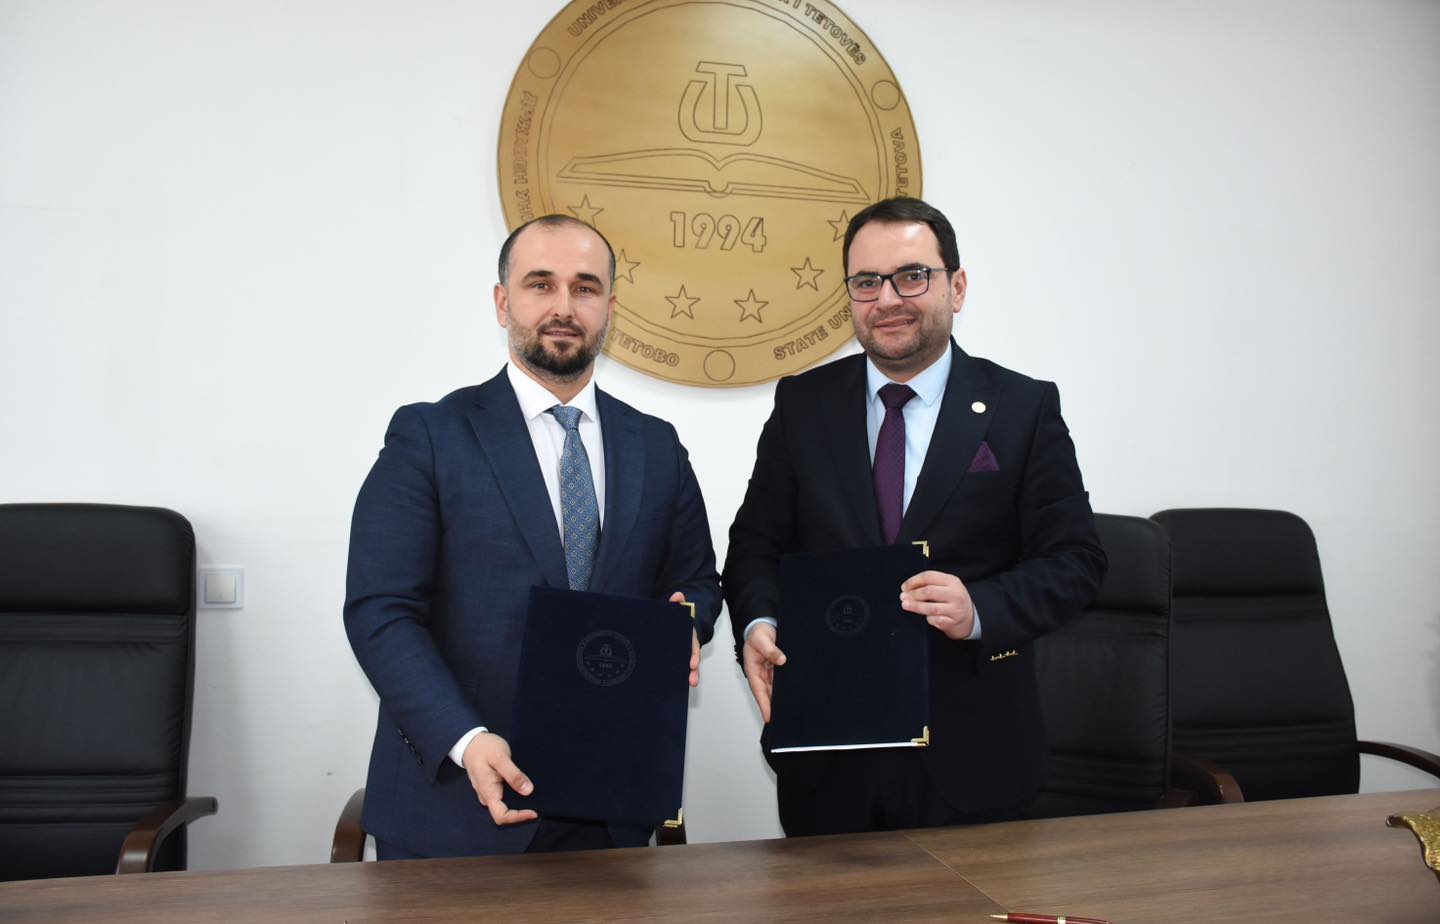 Memorandum për bashkëpunim ndërmjet Sh.A. MEPSO dhe Universitetit të Tetovës 